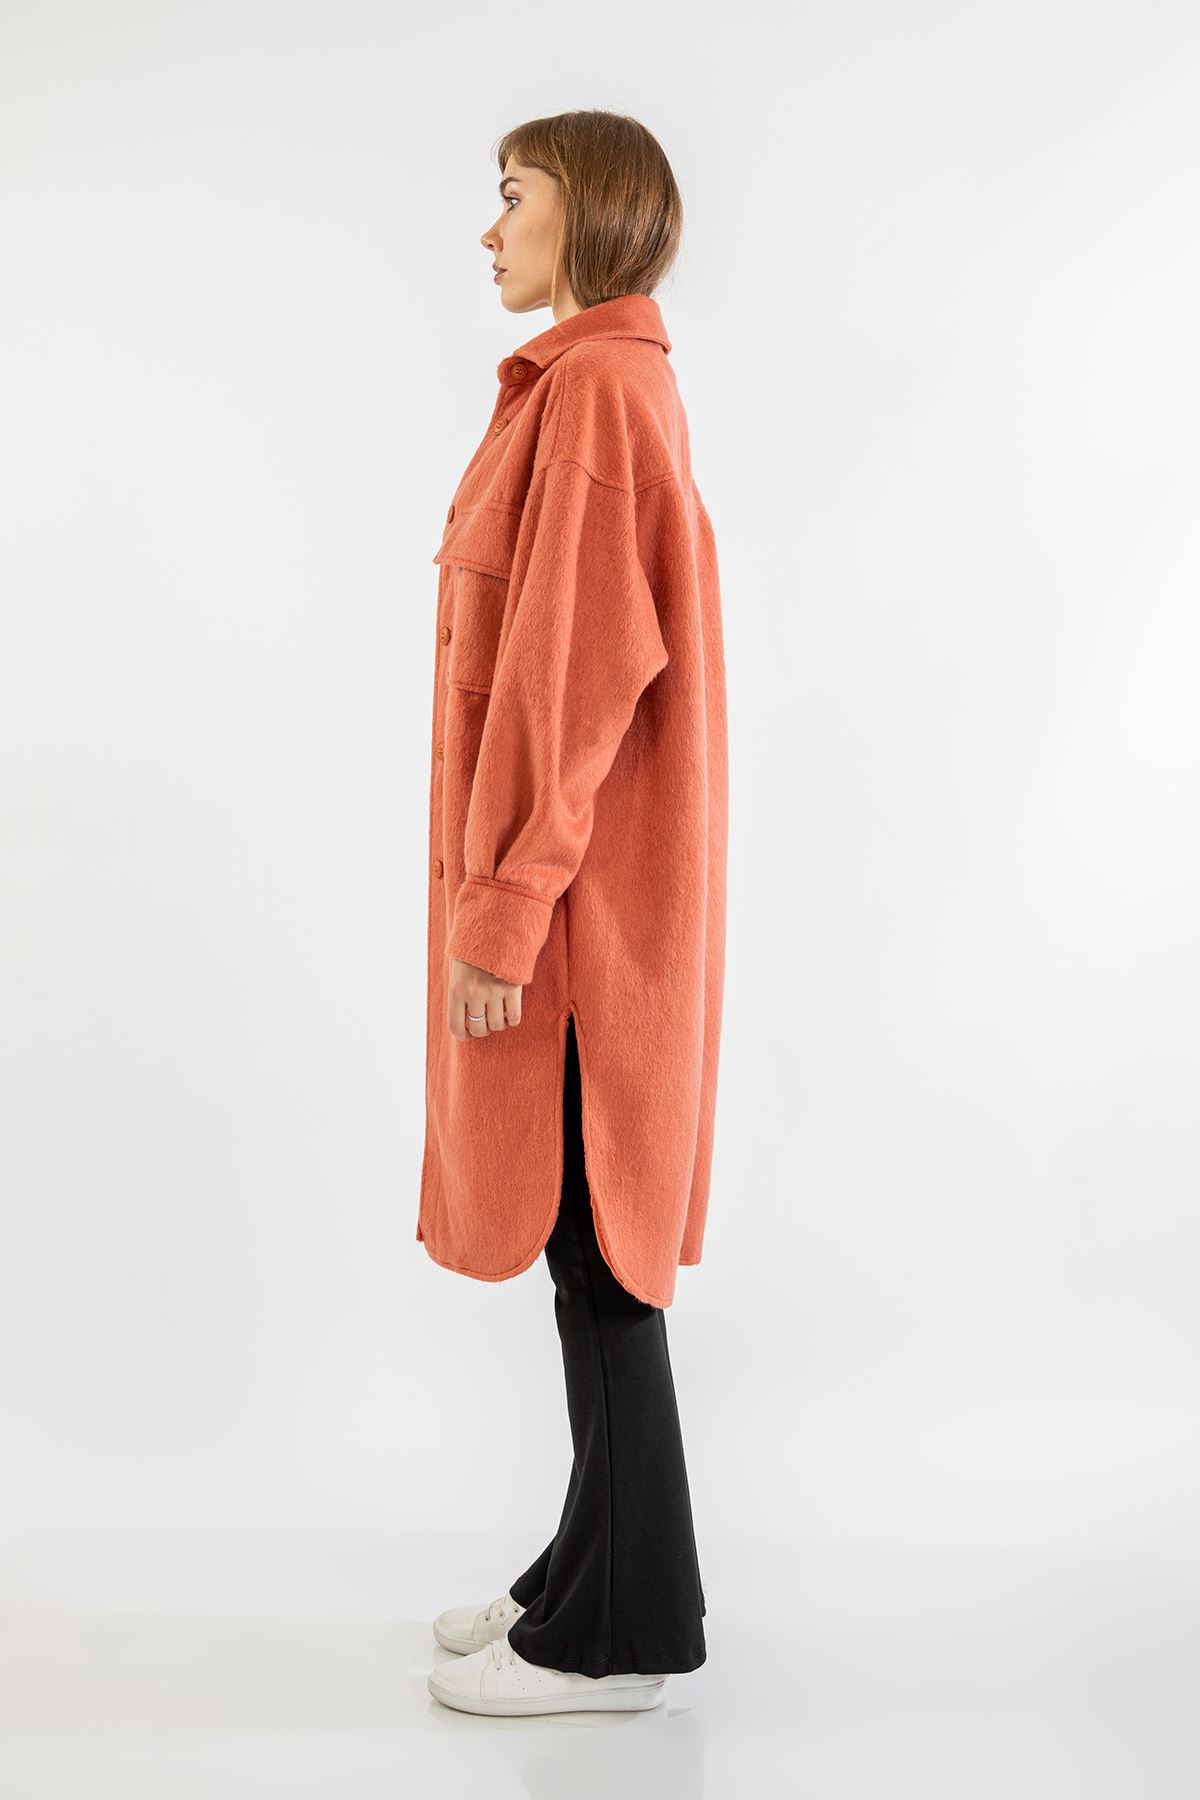 Oduncu Kumaş Gömlek Yaka Oversize/Salaş Kadın Ceket-Mercan